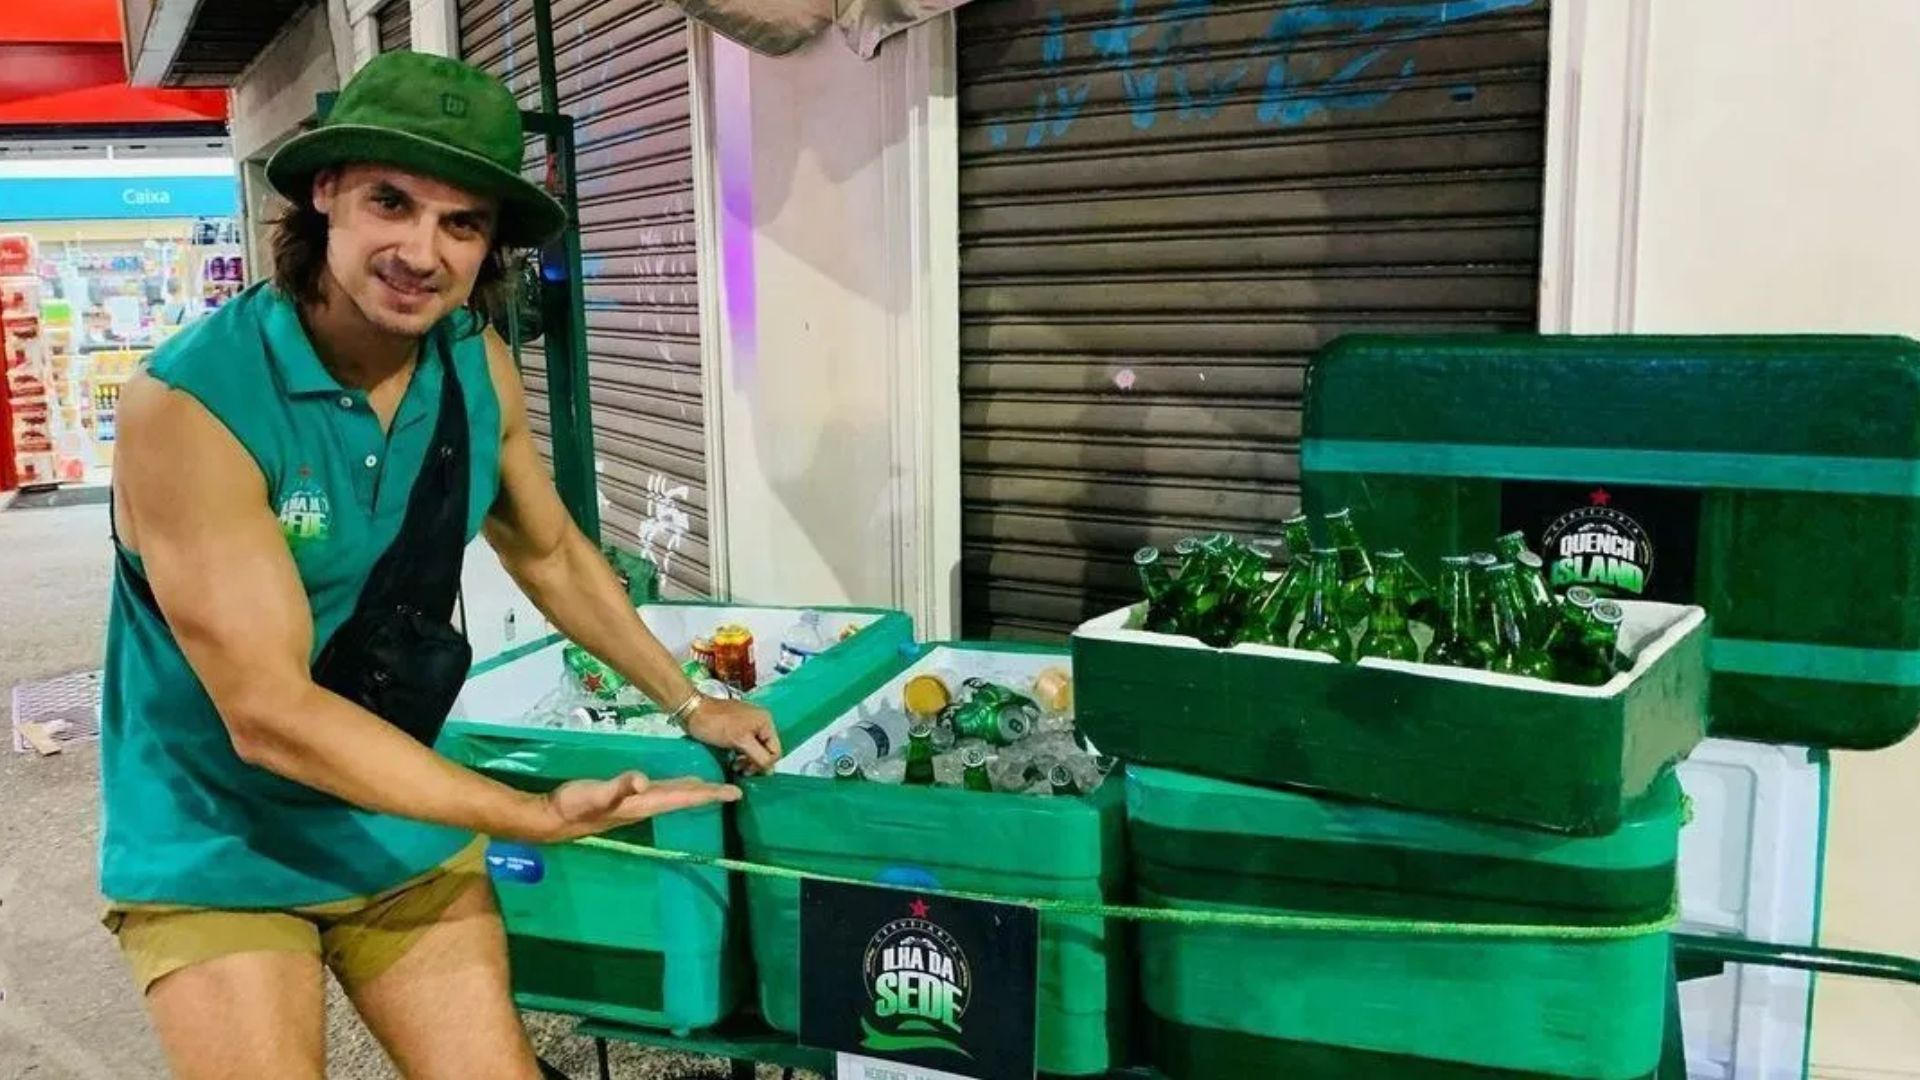 Exclusivo: Ex-galã de “Malhação”, Daniel Erthal viraliza ao ser visto vendendo cerveja na rua e abre o jogo sobre vida de ambulante e repercussão